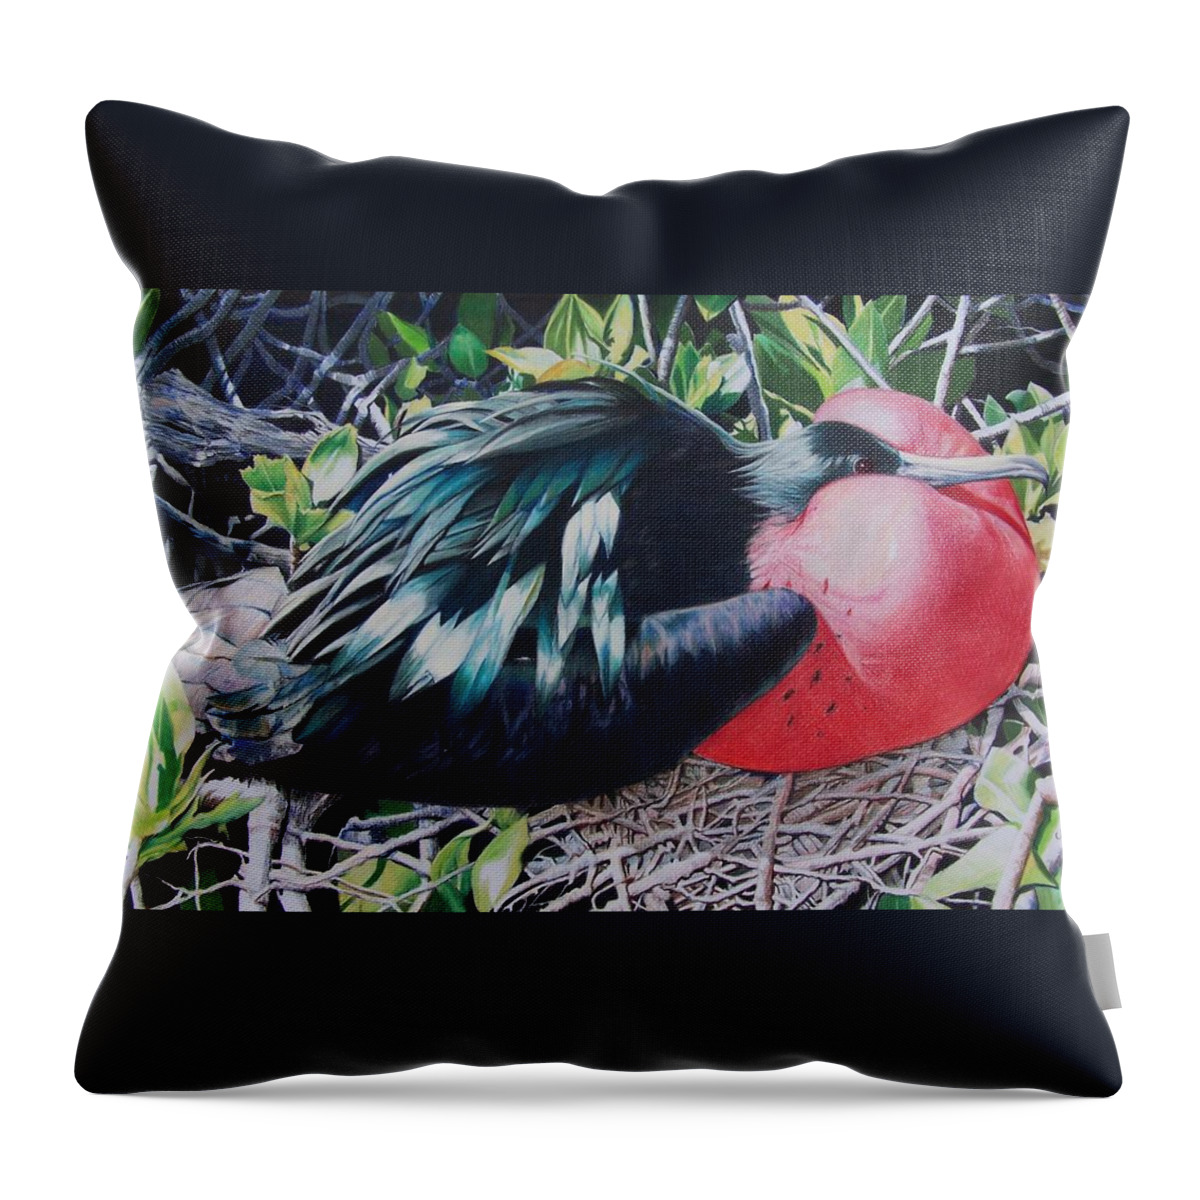 Bird Throw Pillow featuring the mixed media Frigate Bird by Constance Drescher